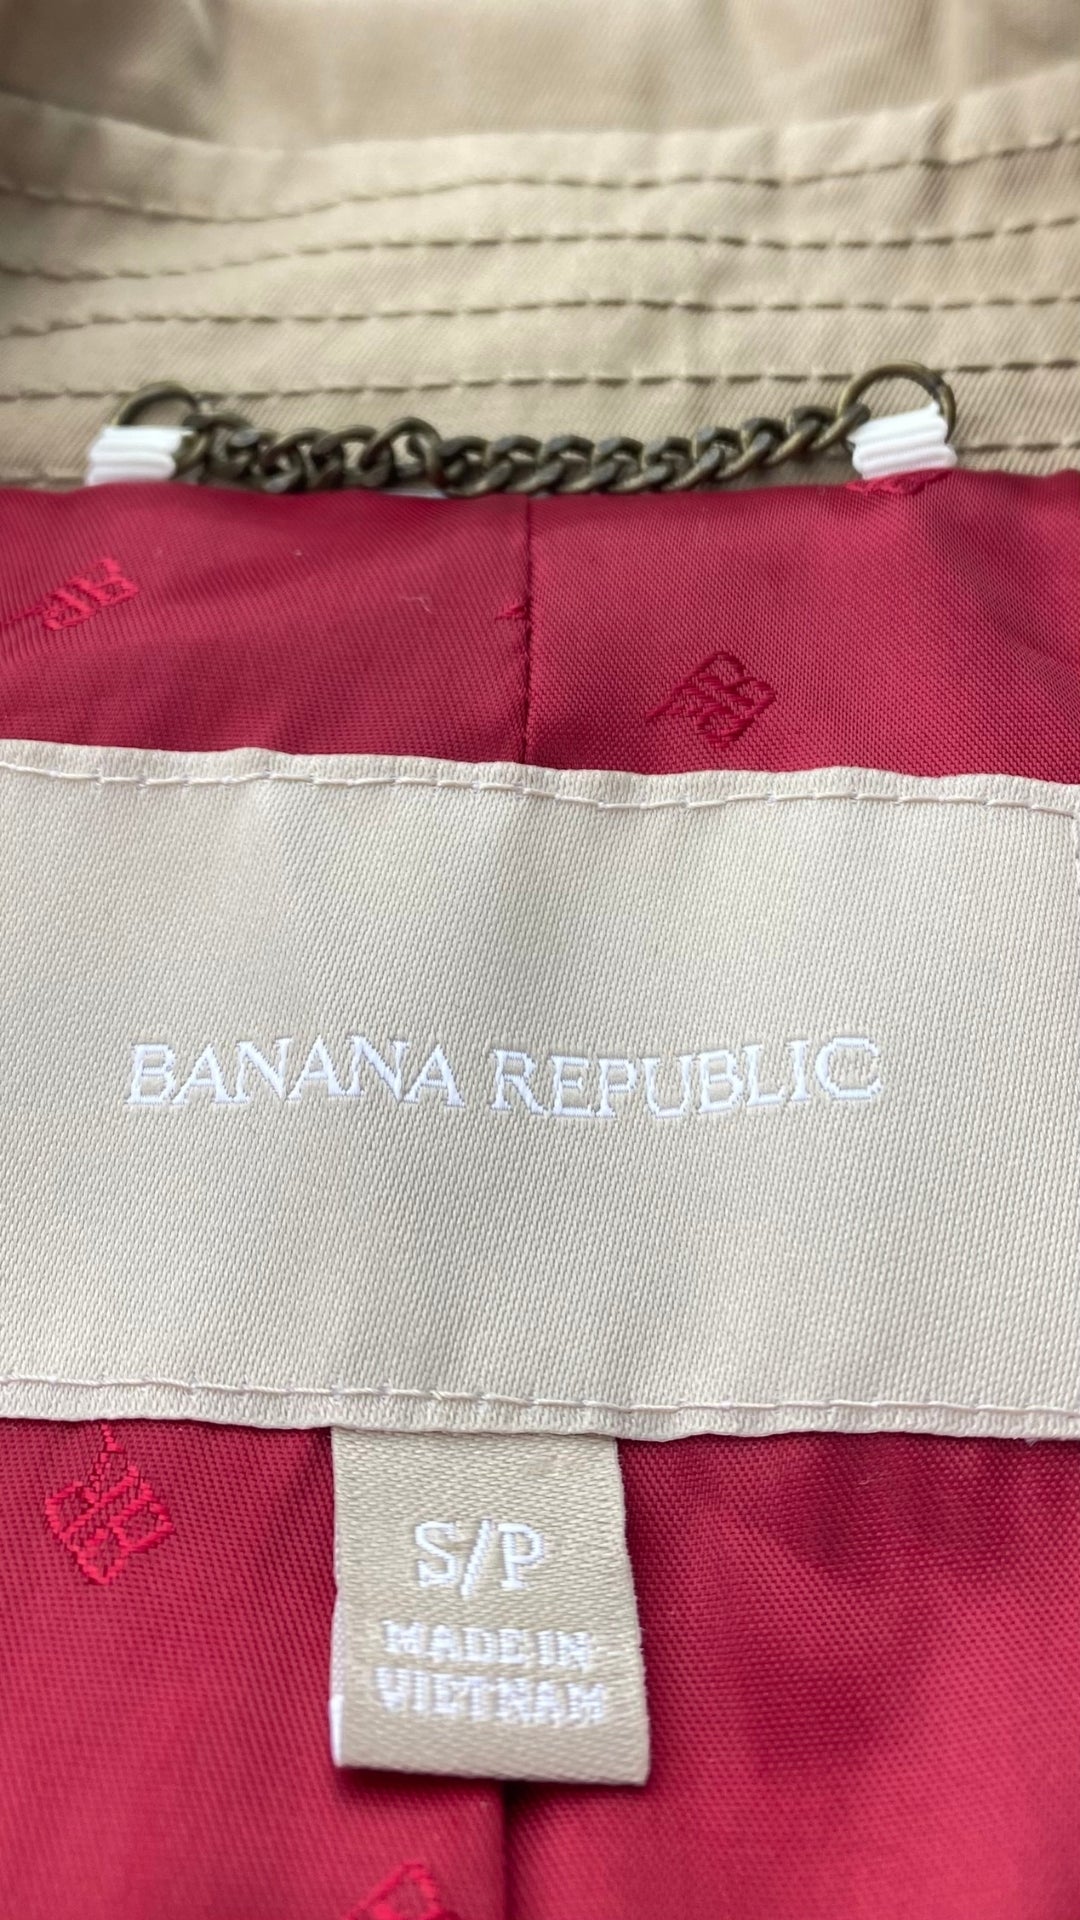 Trench sable évasé à l'ourlet Banana Republic, taille small. Vue de l'étiquette de marque et de taille.